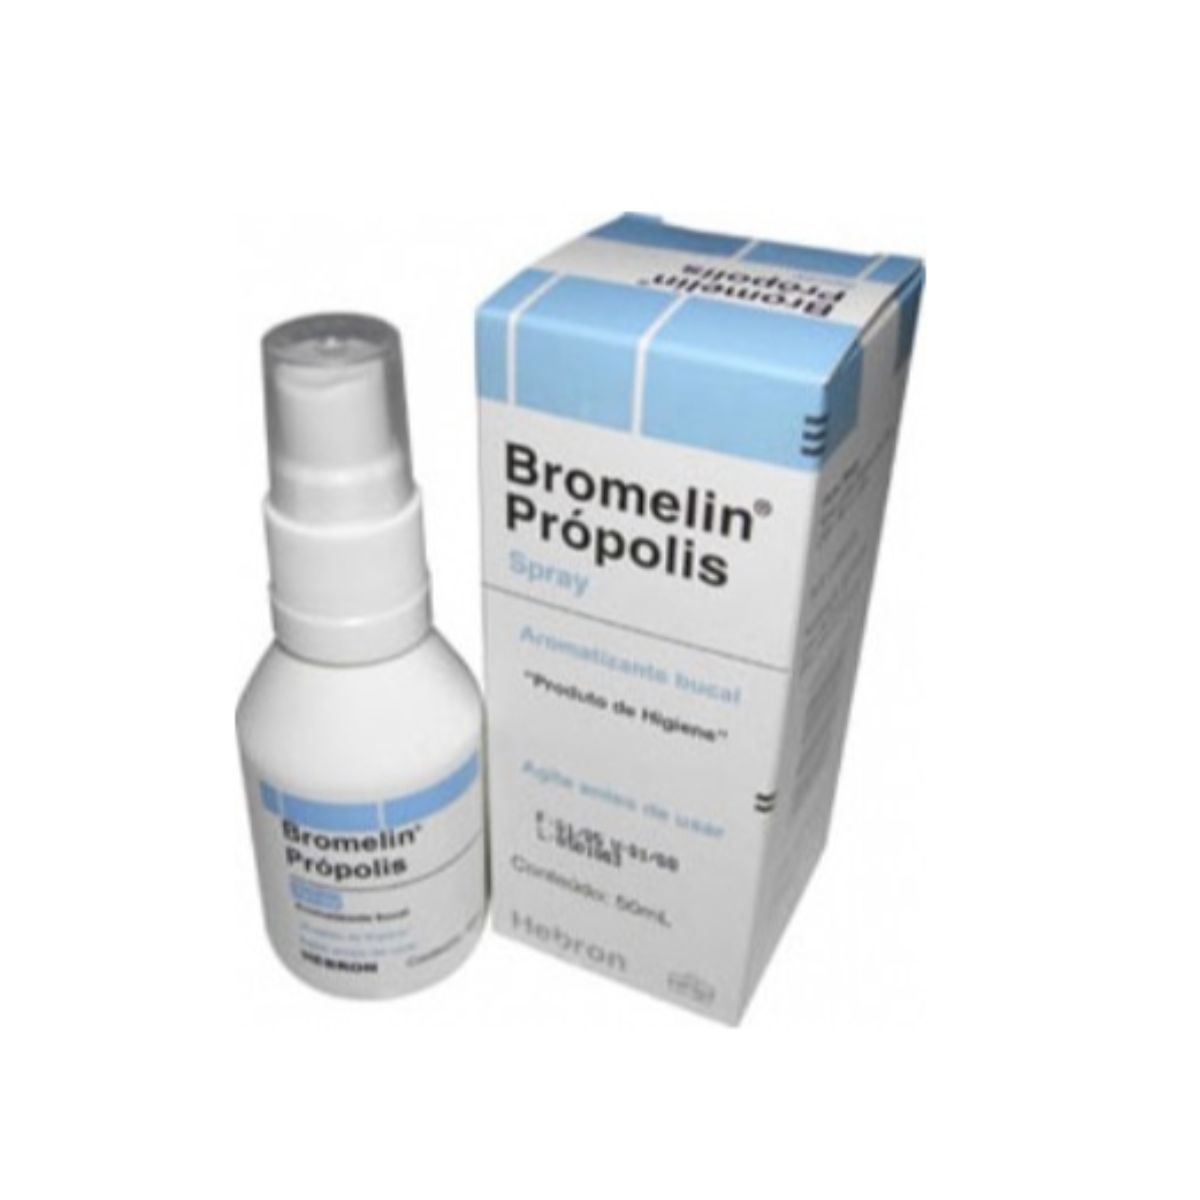 bromelin-propolis-solucao-oral-com-50-ml-1.jpg